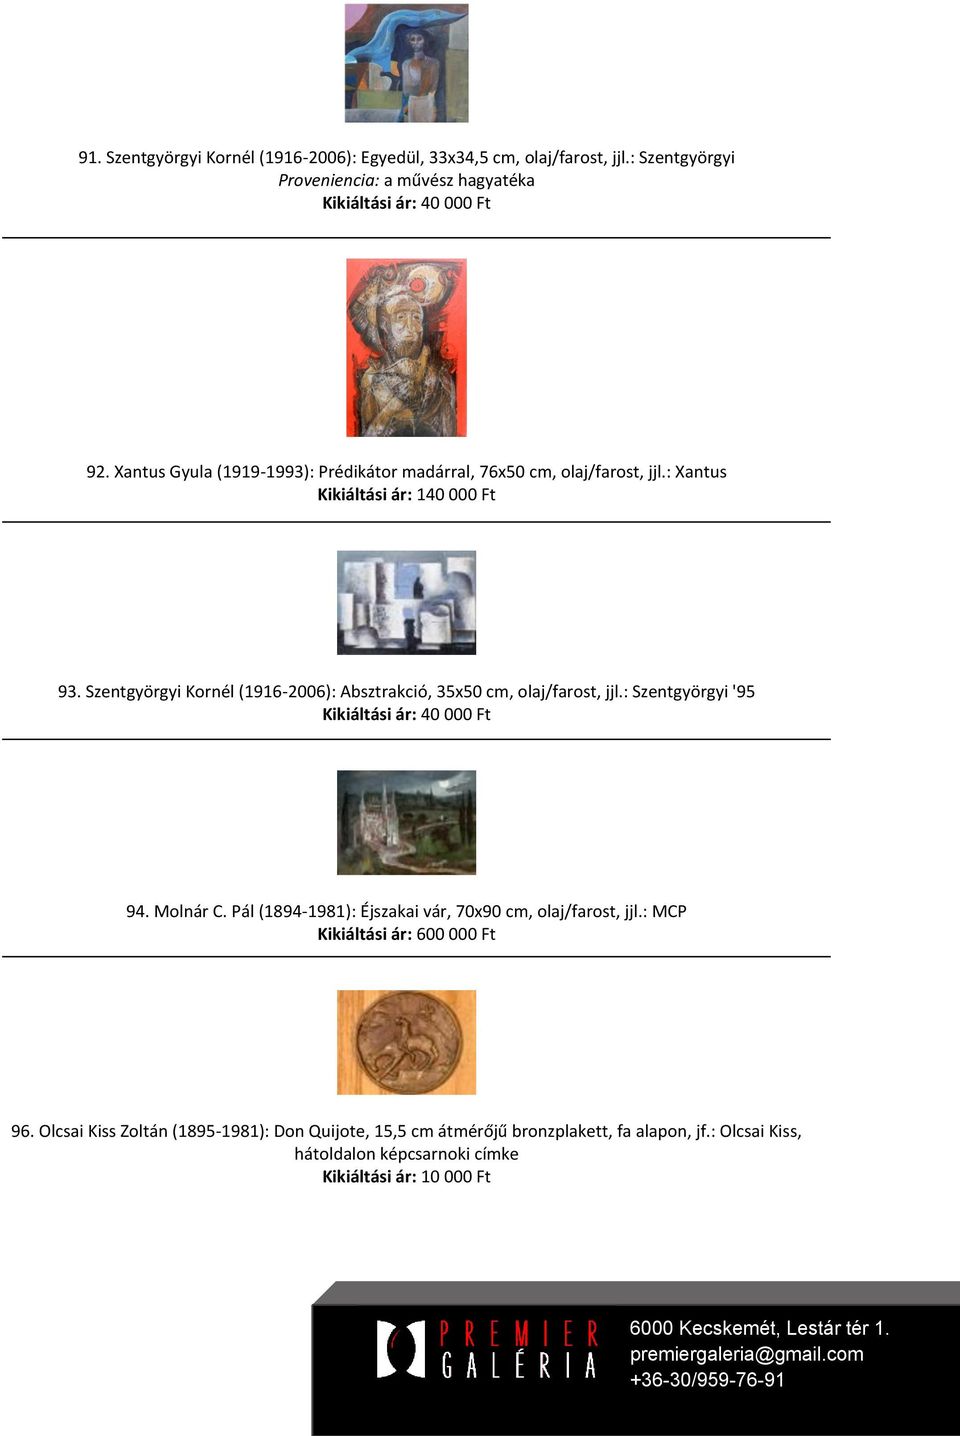 Szentgyörgyi Kornél (1916-2006): Absztrakció, 35x50 cm, olaj/farost, jjl.: Szentgyörgyi '95 Kikiáltási ár: 40 000 Ft 94. Molnár C.